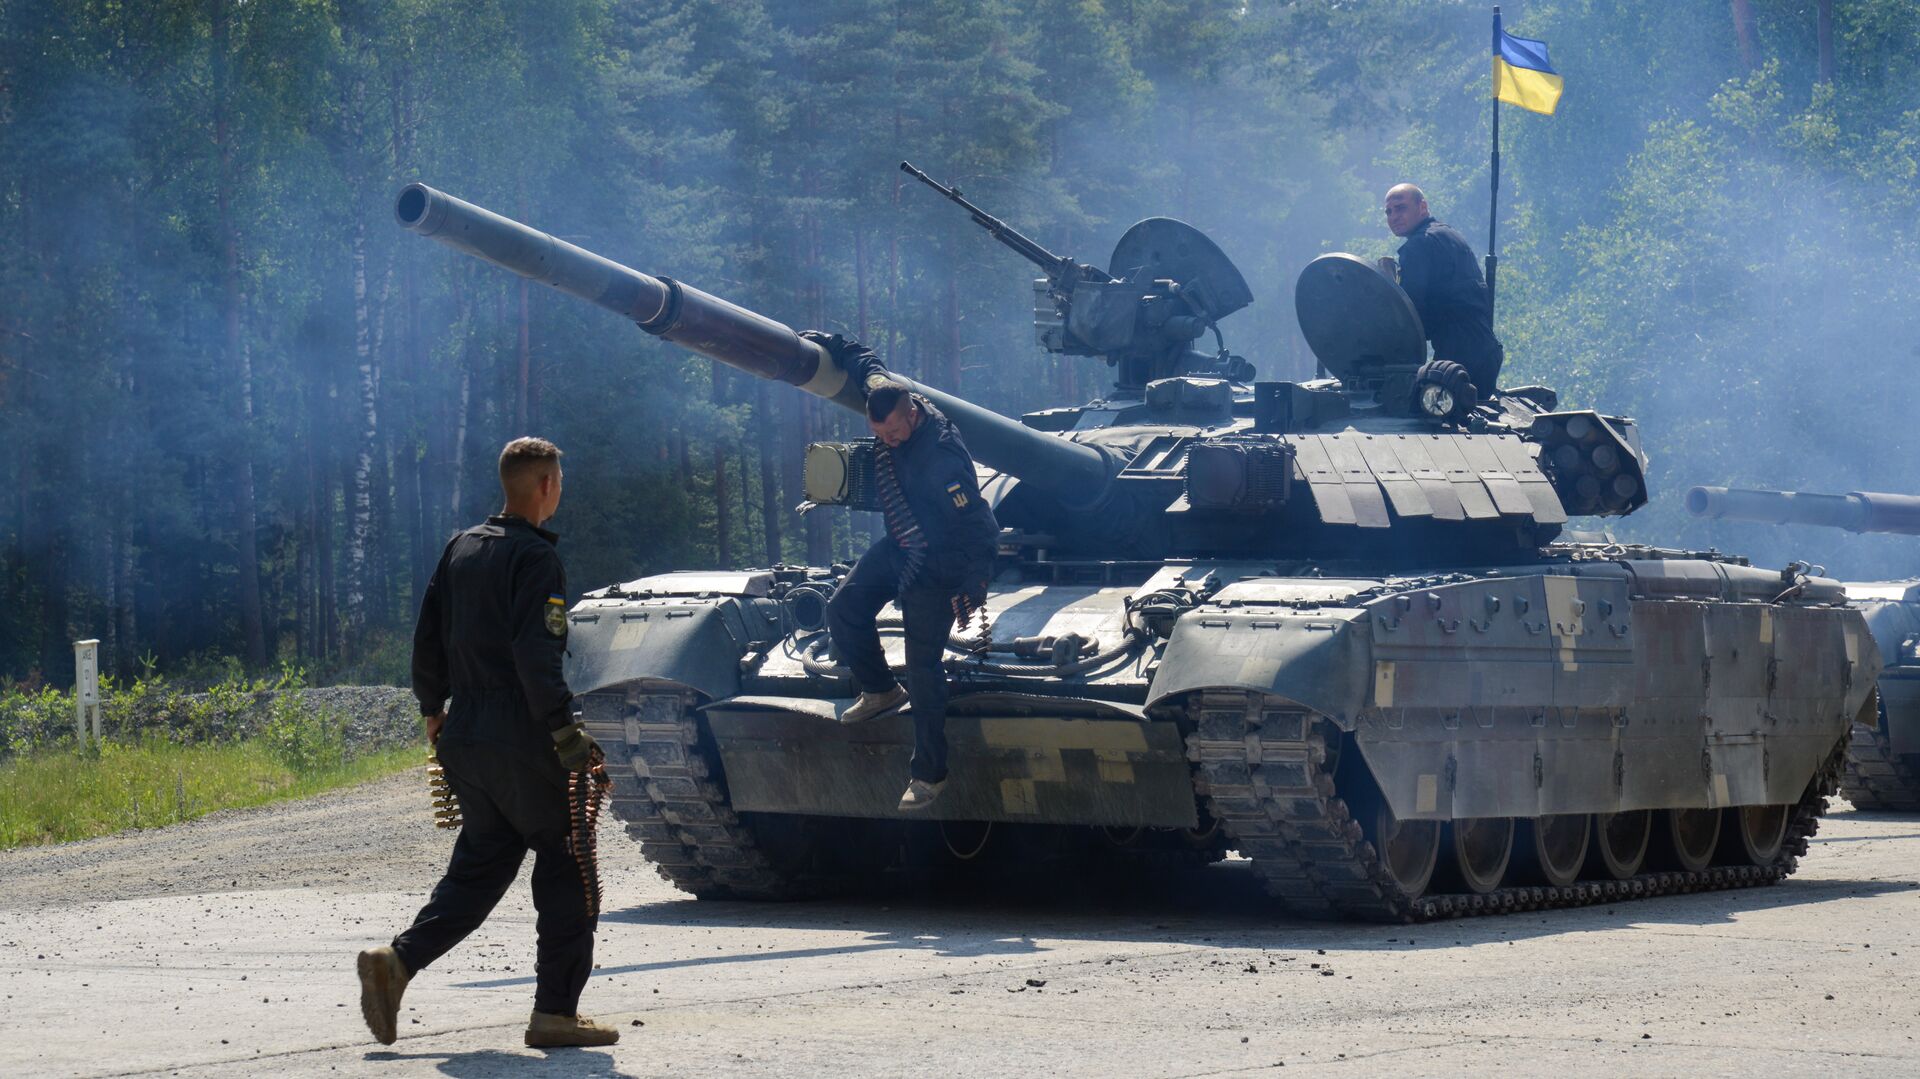 Украинские военные из 14-й волынской механизированной бригады ВСУ на танке Т-84 во время соревнований Strong Europe Tank Challenge в городе Графенвер, Германия. 6 июня 2018 - РИА Новости, 1920, 25.04.2021